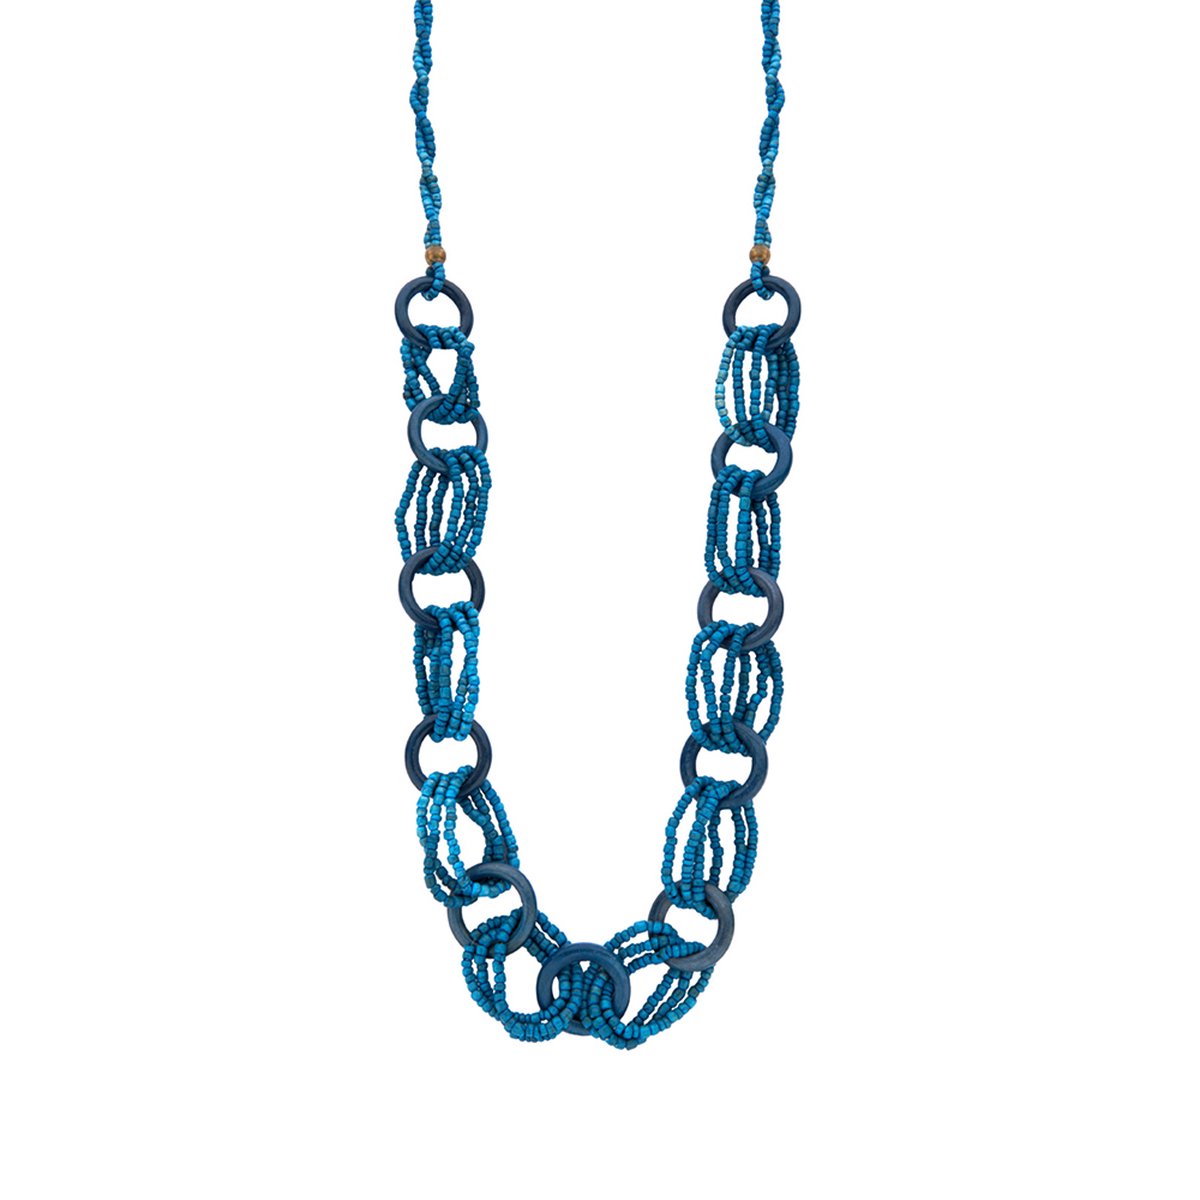 Les Cordes - Halsketting - Collier - URANIUM - Kleur Blauw - Hout - Sieraad Dames - Juwelen - Statement ketting